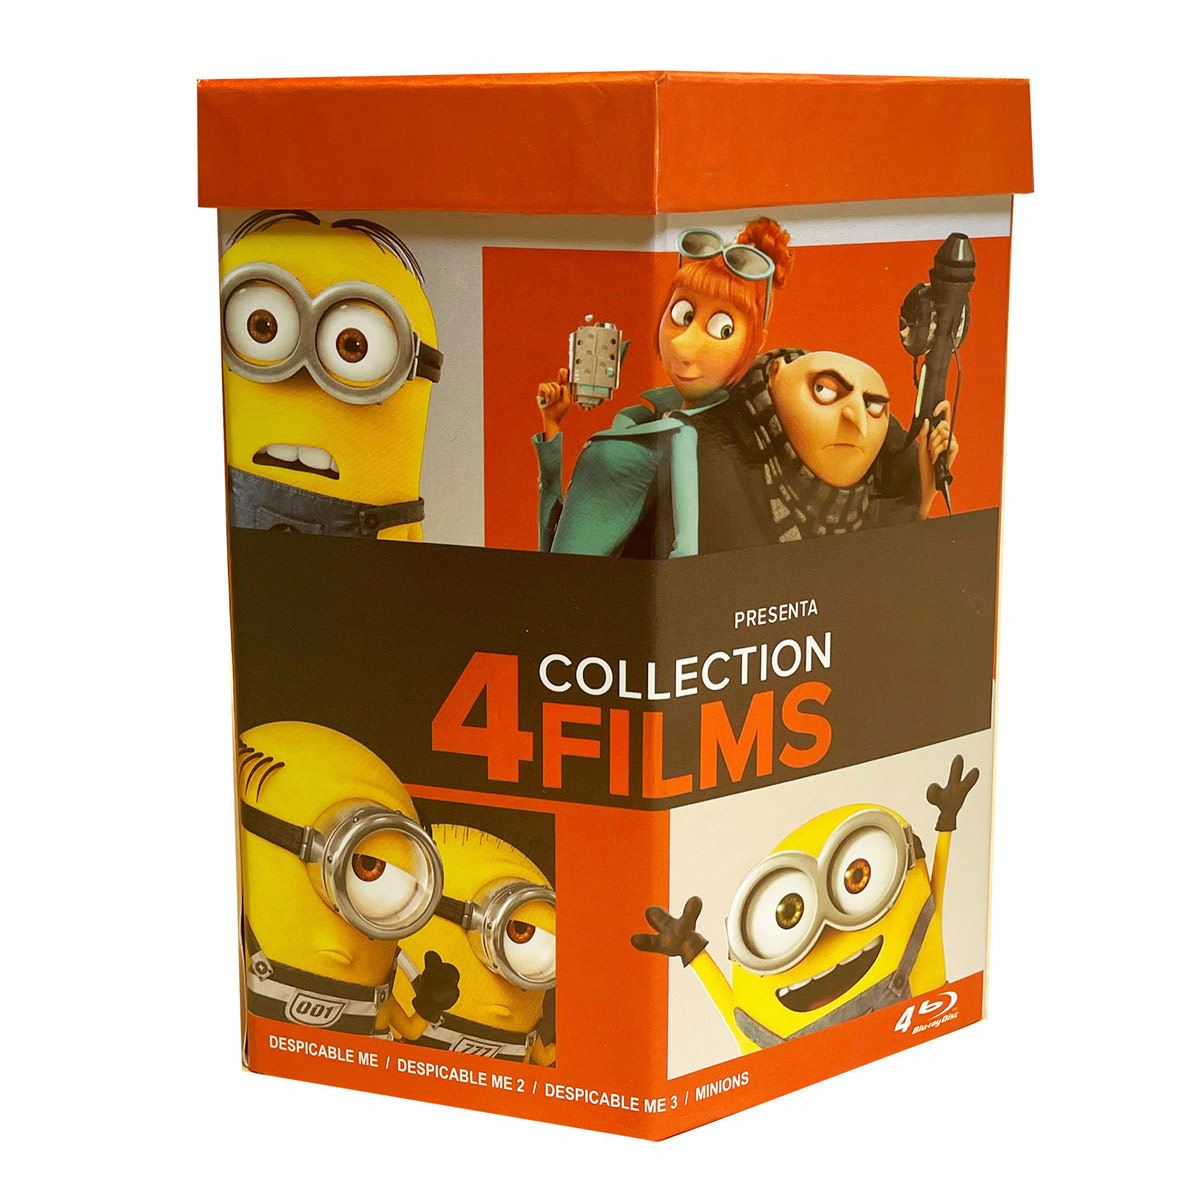 Disney Clasicos Live Action Coleccion 7 Peliculas Blu-ray